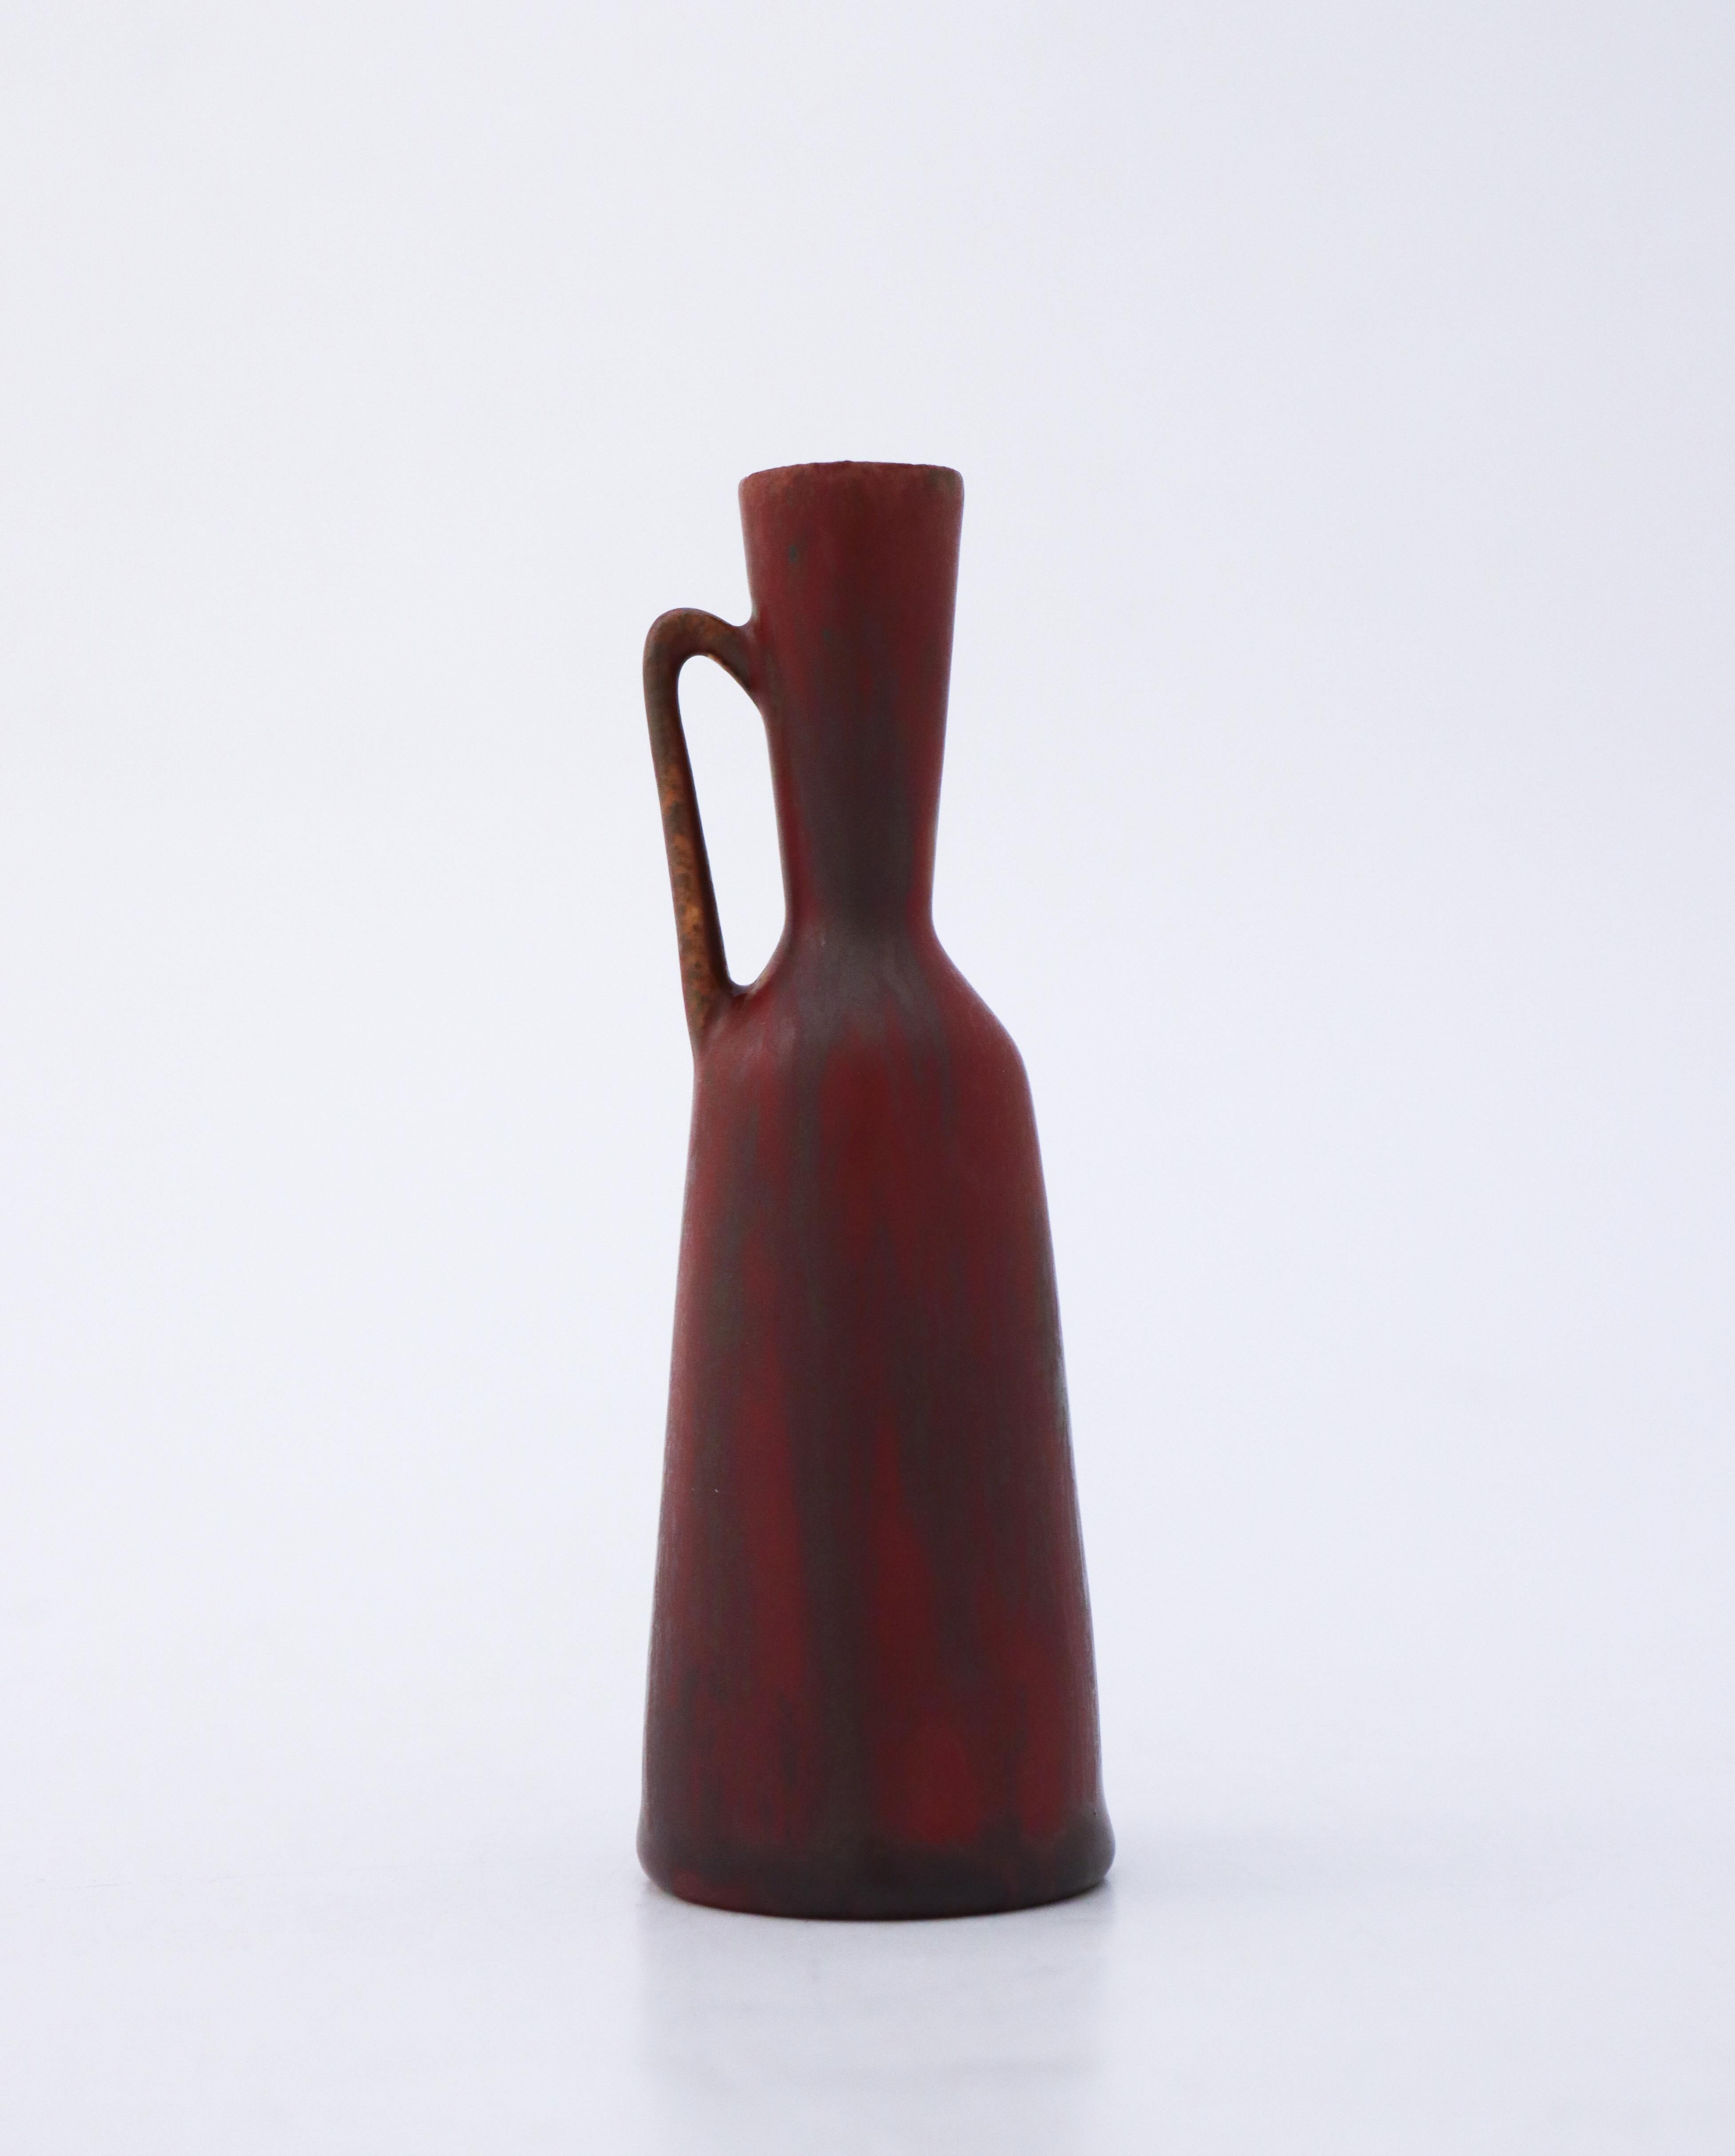 Eine braun/bordeauxrote Vase, entworfen von Carl-Harry Stålhane bei Rörstrand, 12,5 cm hoch. Es ist als 2. Qualität markiert, weil es einen kleinen Riss in der Nähe der Basis aus der Produktion hat, siehe detaillierte Fotos von diesem. Abgesehen